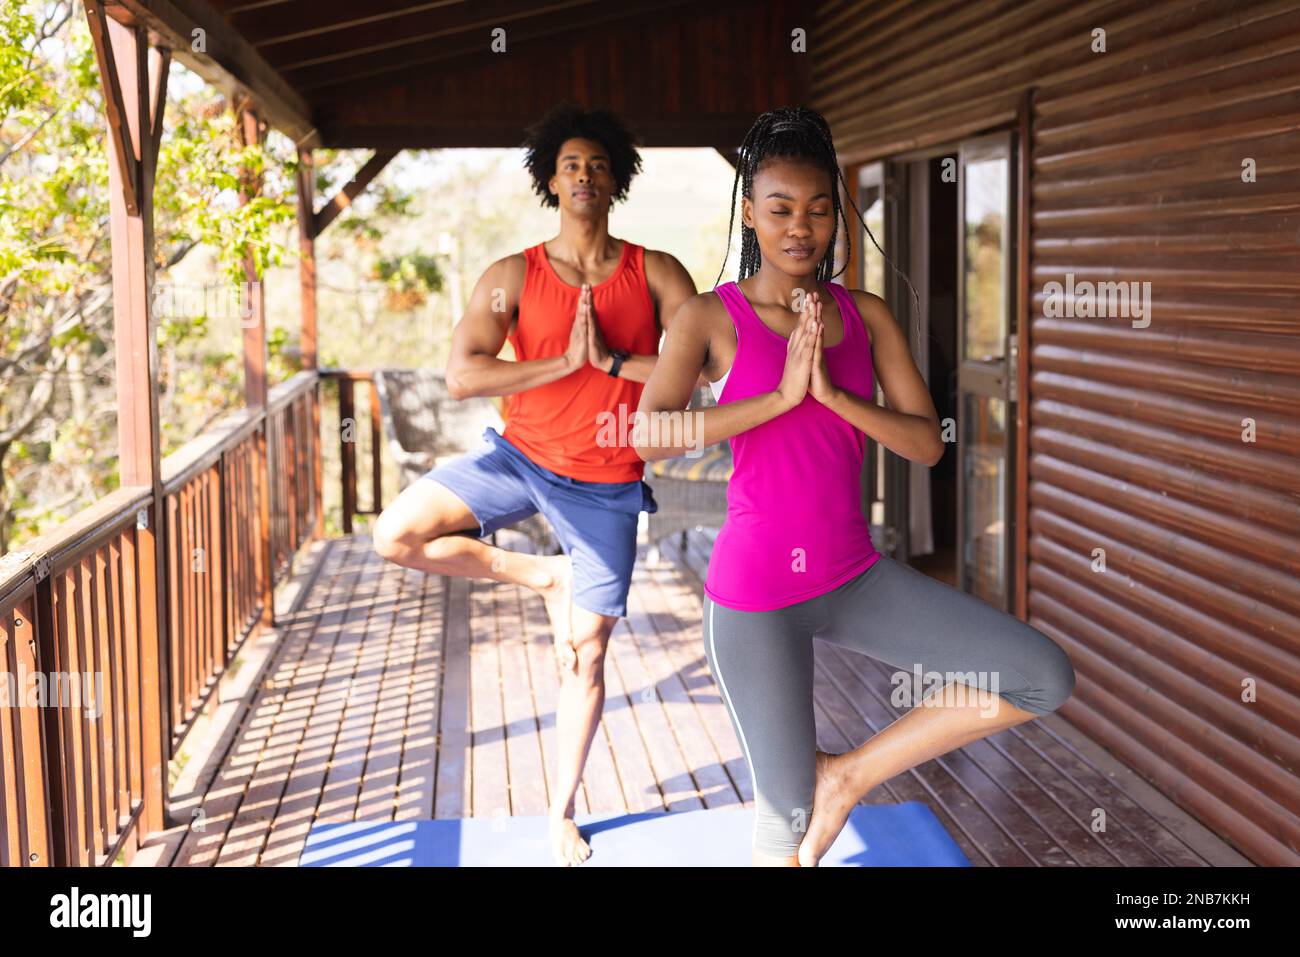 Glückliches afroamerikanisches Paar, das Zeit in einer Blockhütte verbringt und Yoga praktiziert. Blockhütte, Natur- und Lifestyle-Konzept. Stockfoto